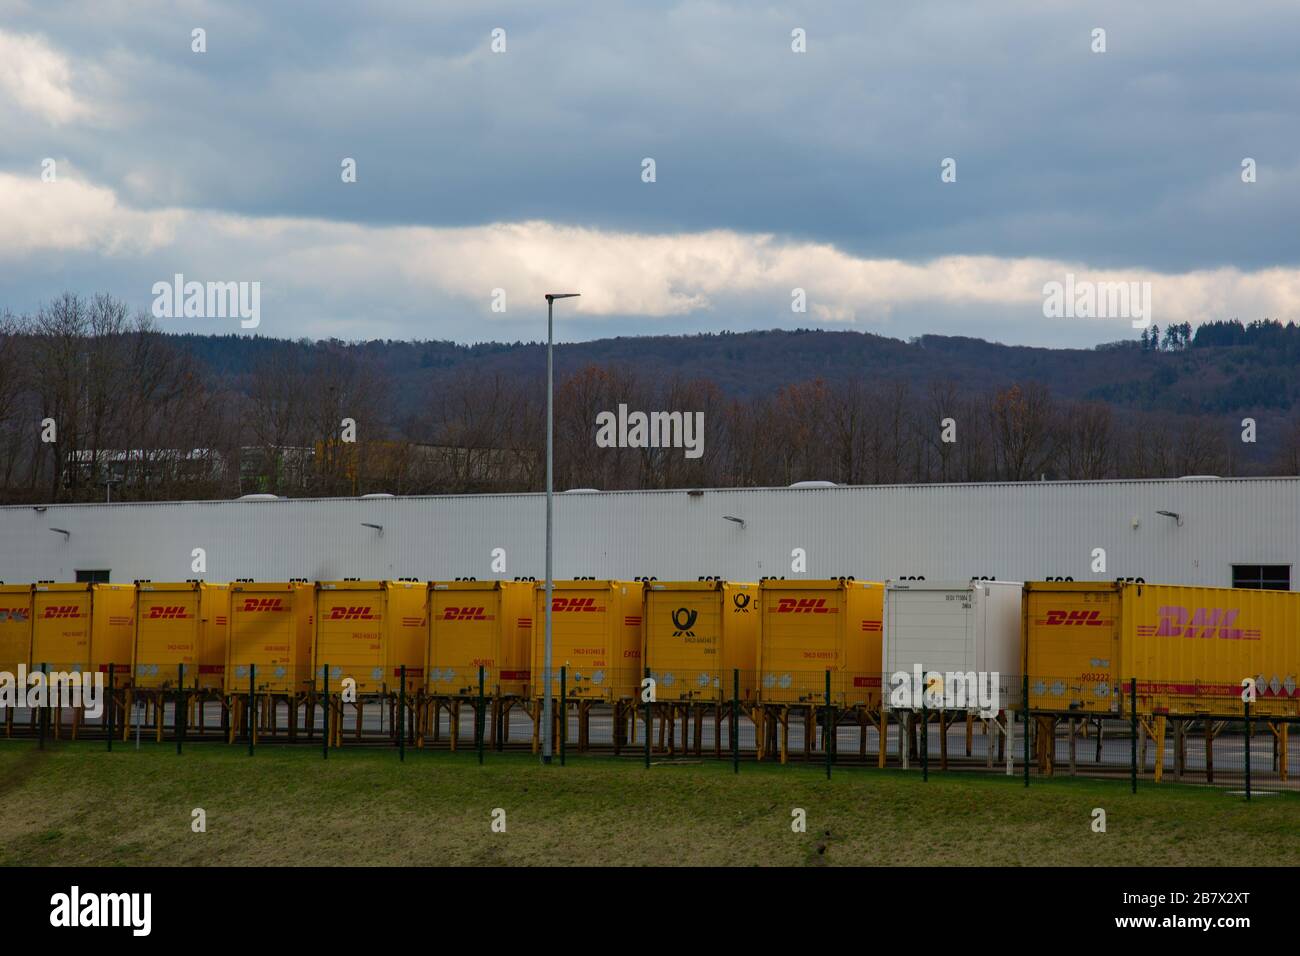 Neuwied, Allemagne - 07 mars 2020: Conteneur de livraison DHL devant un dépôt DHL . DHL est un leader mondial de la logistique. Banque D'Images